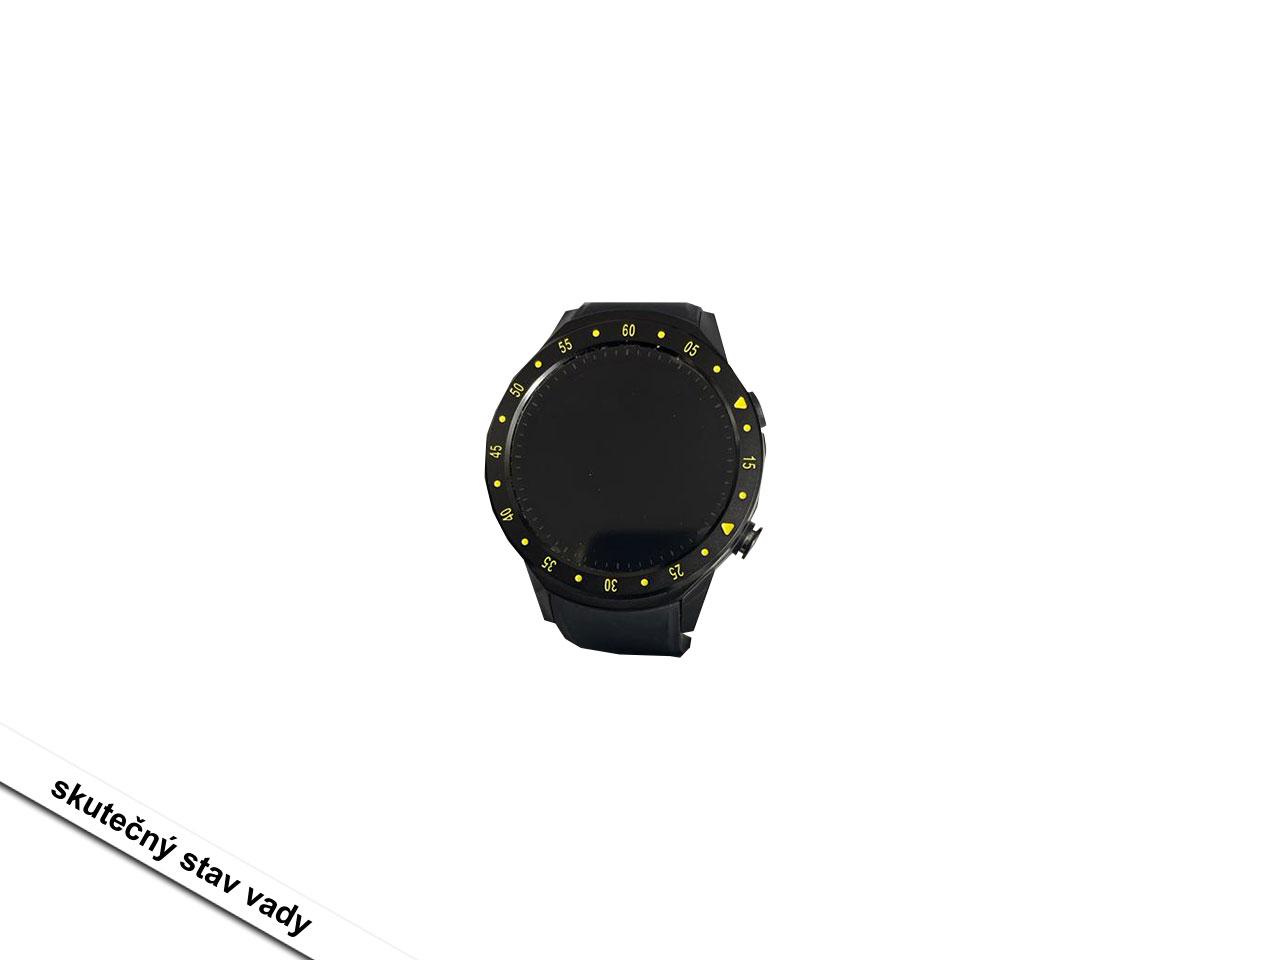 Sportovní hodinky CARNEO G-cross, černé